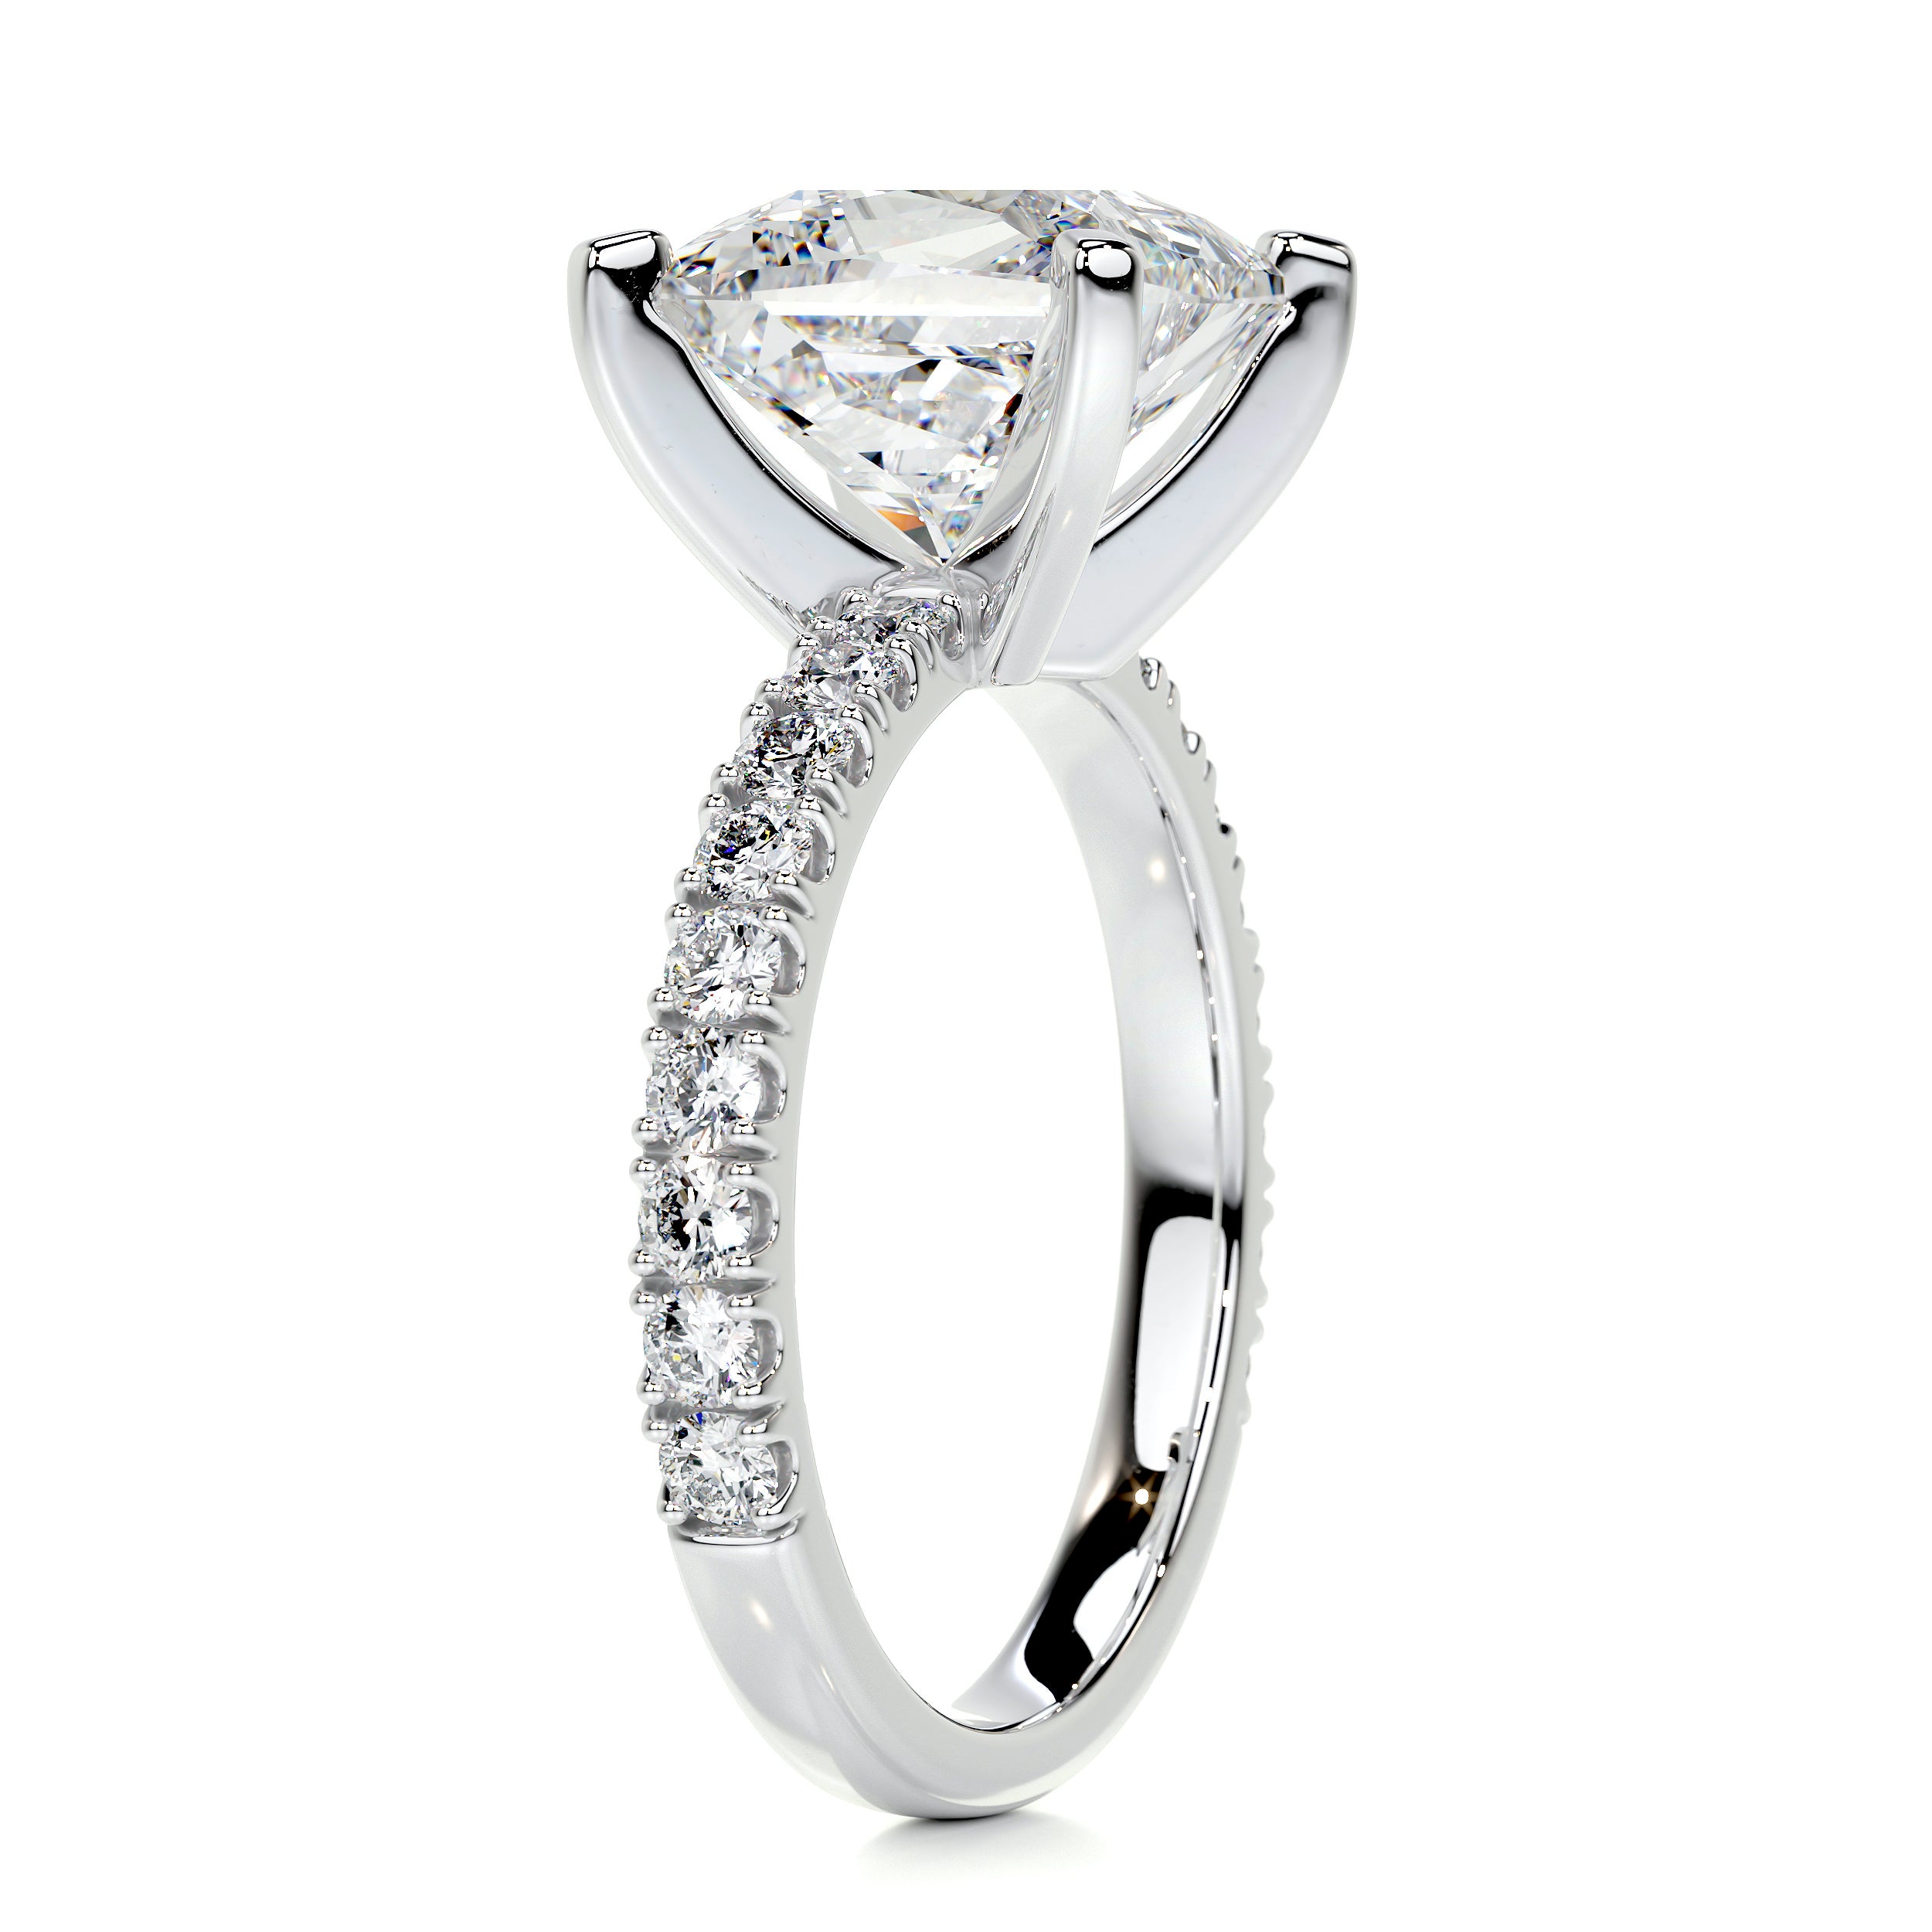 Blair Diamond Engagement Ring   (3.5 Carat) -14K White Gold